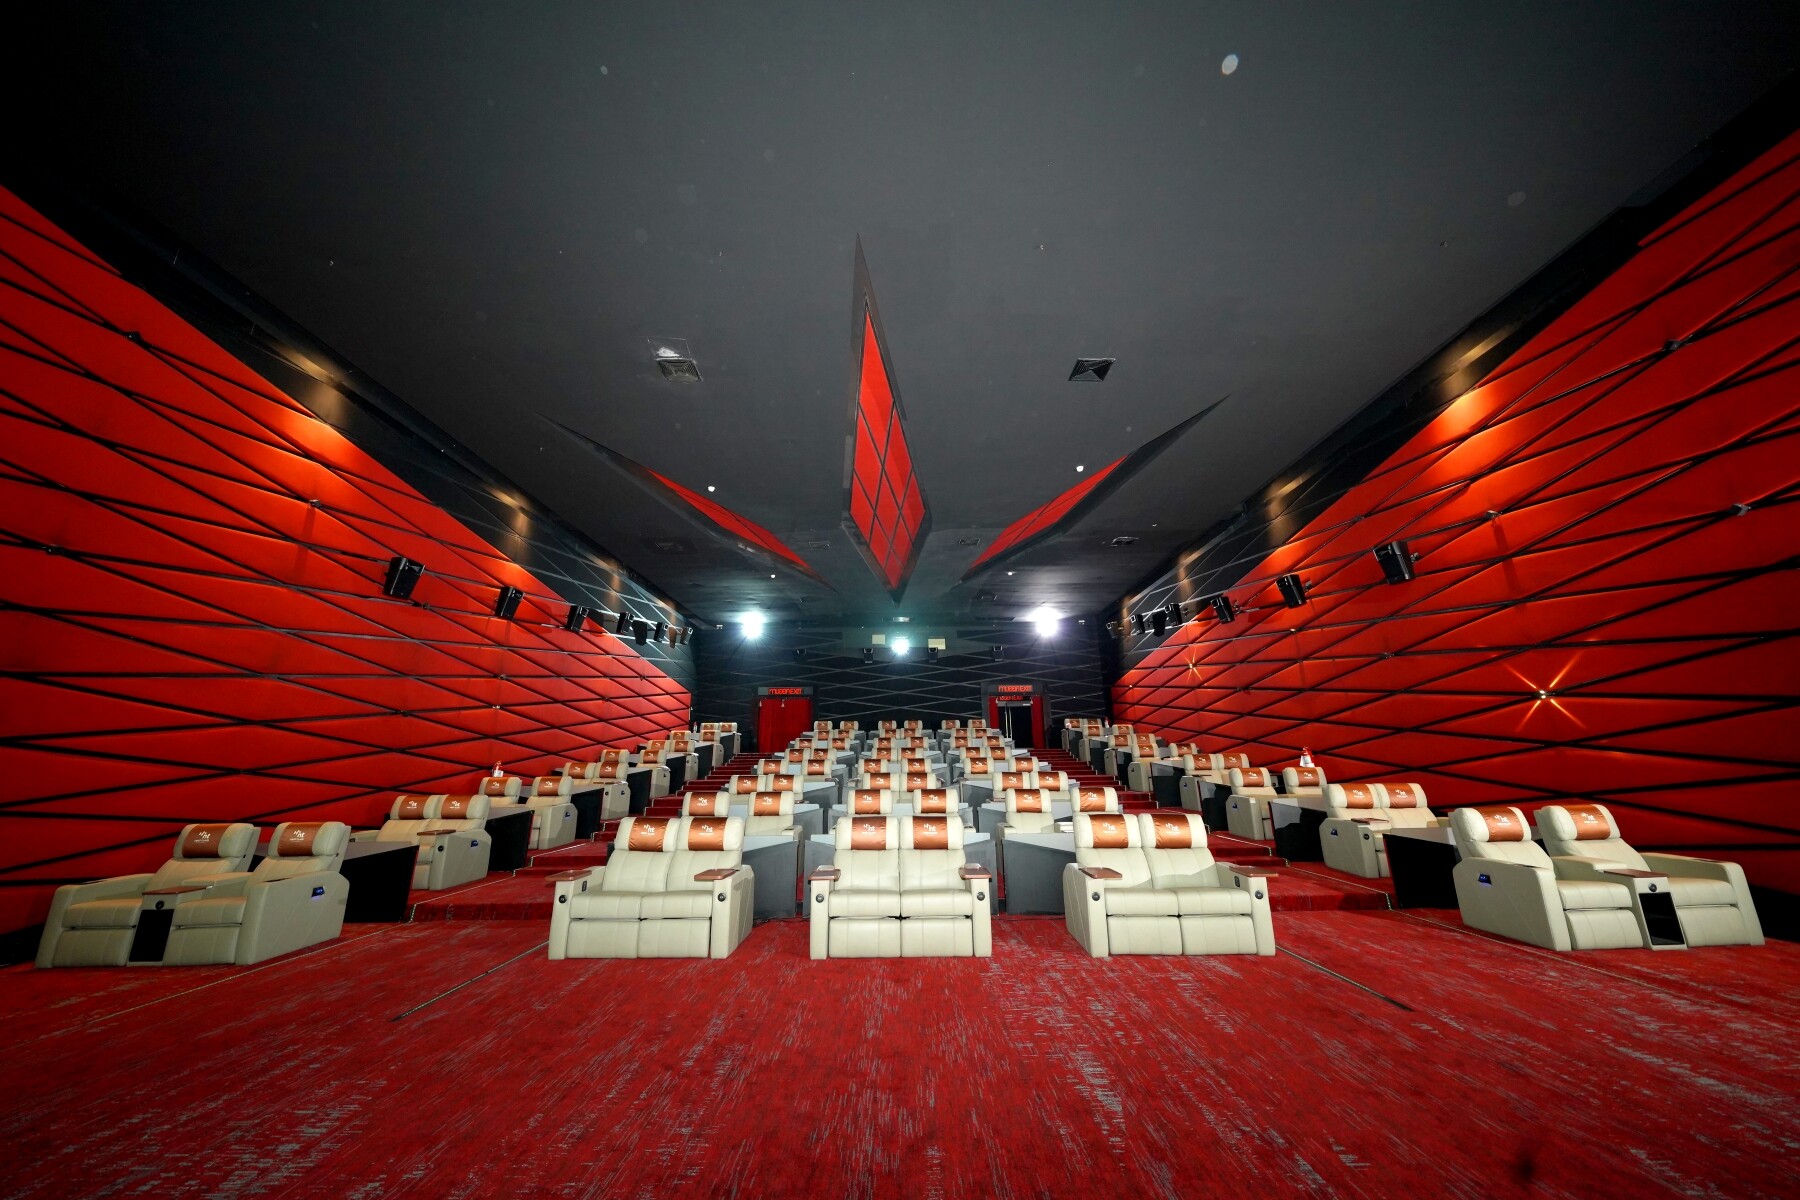 เอส เอฟ และ NT ร่วมสร้างประสบการณ์บันเทิงระดับพรีเมี่ยม เปิดตัว "NT First Class Cinema" อีกระดับของการดูหนัง พร้อมบริการใหม่ สั่งป๊อปคอร์นผ่านแอปฯ เสิร์ฟฟรีถึงที่นั่ง